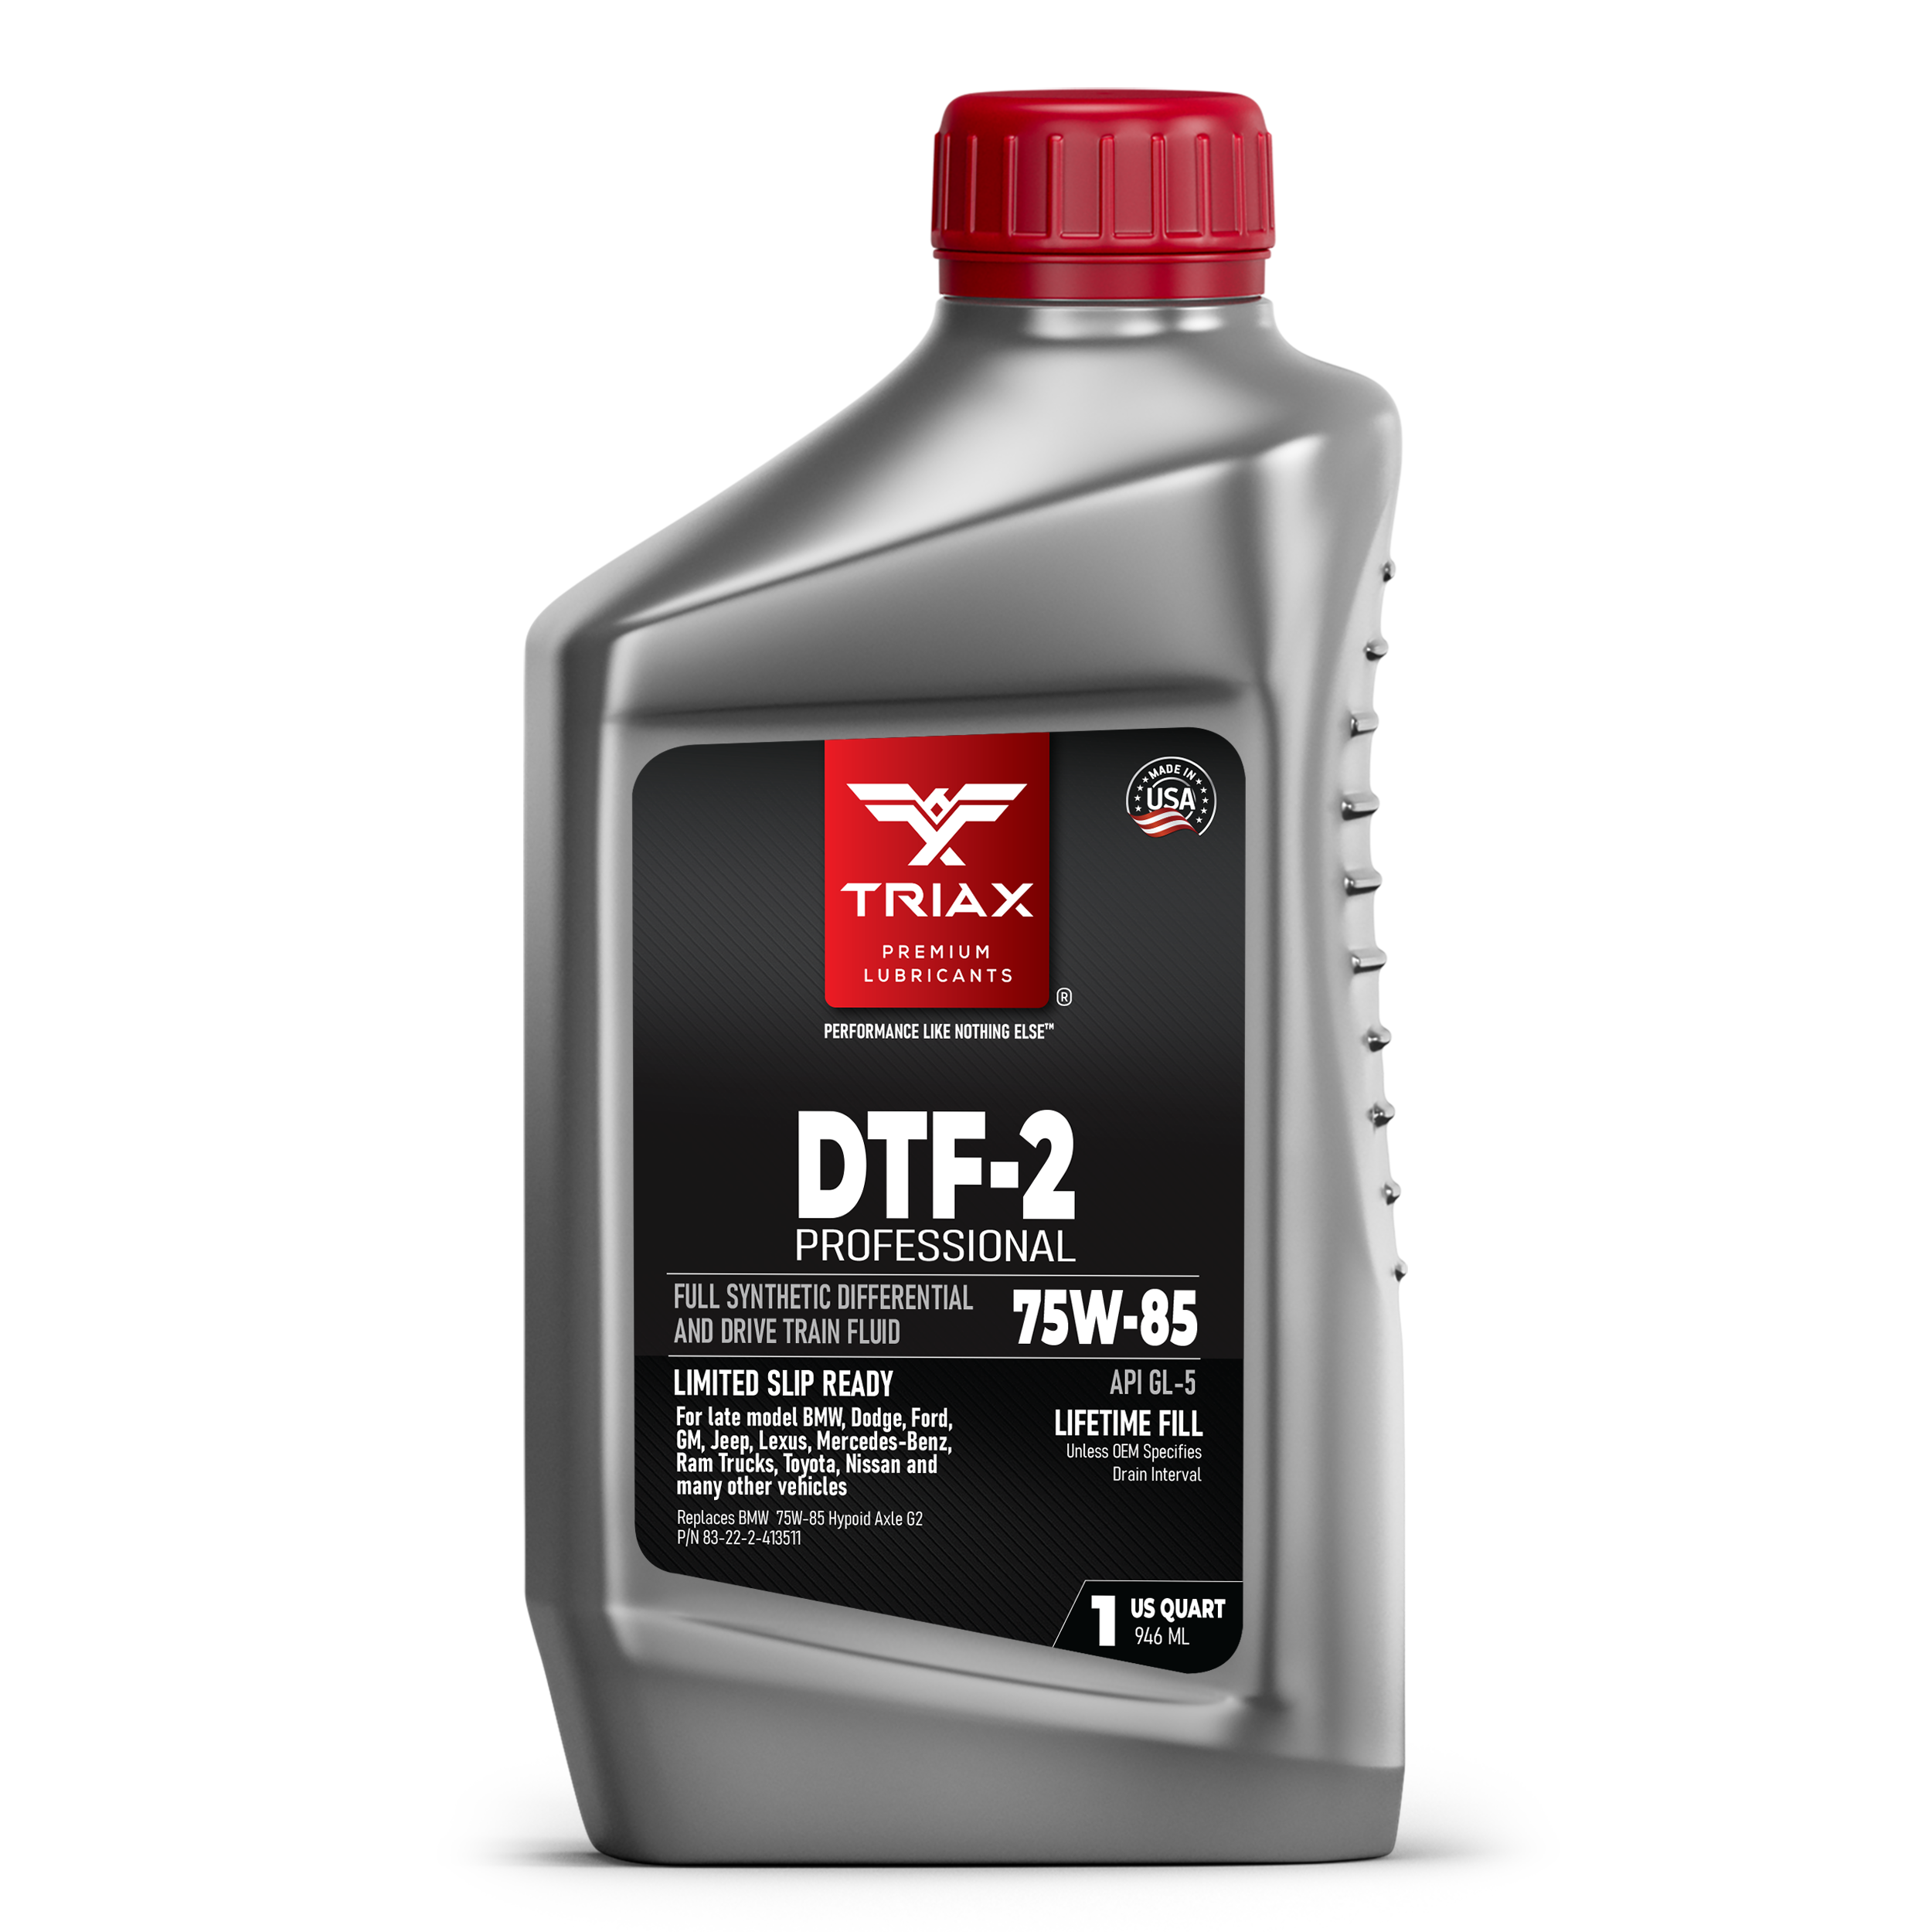 TRIAX DTF-2 Professional 75W-85